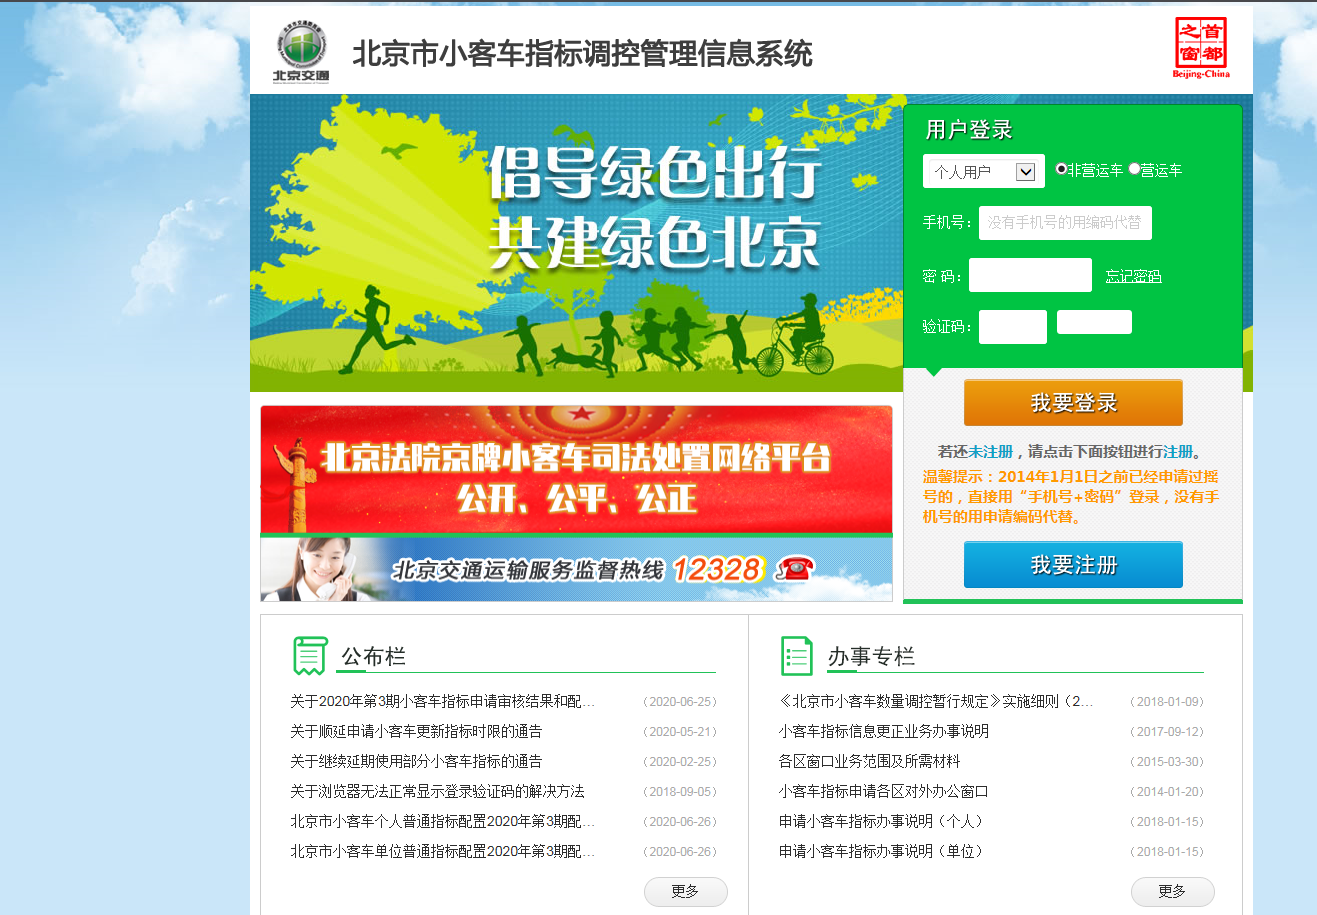 北京市小客车指标管理信息系统